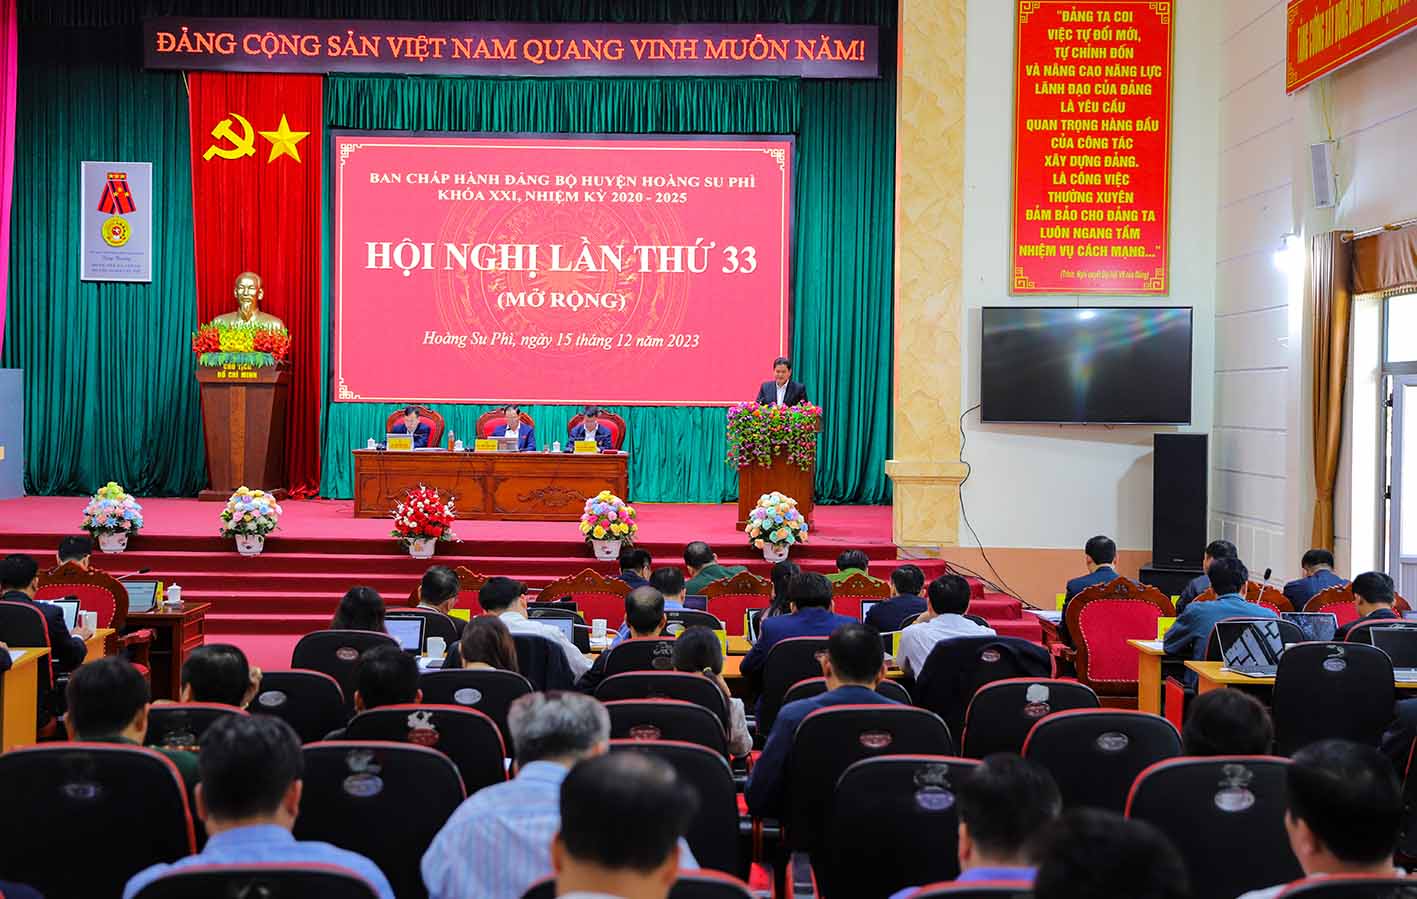 Hội nghị Ban chấp hành Đảng bộ huyện Hoàng Su Phì lần thứ 33 mở rộng